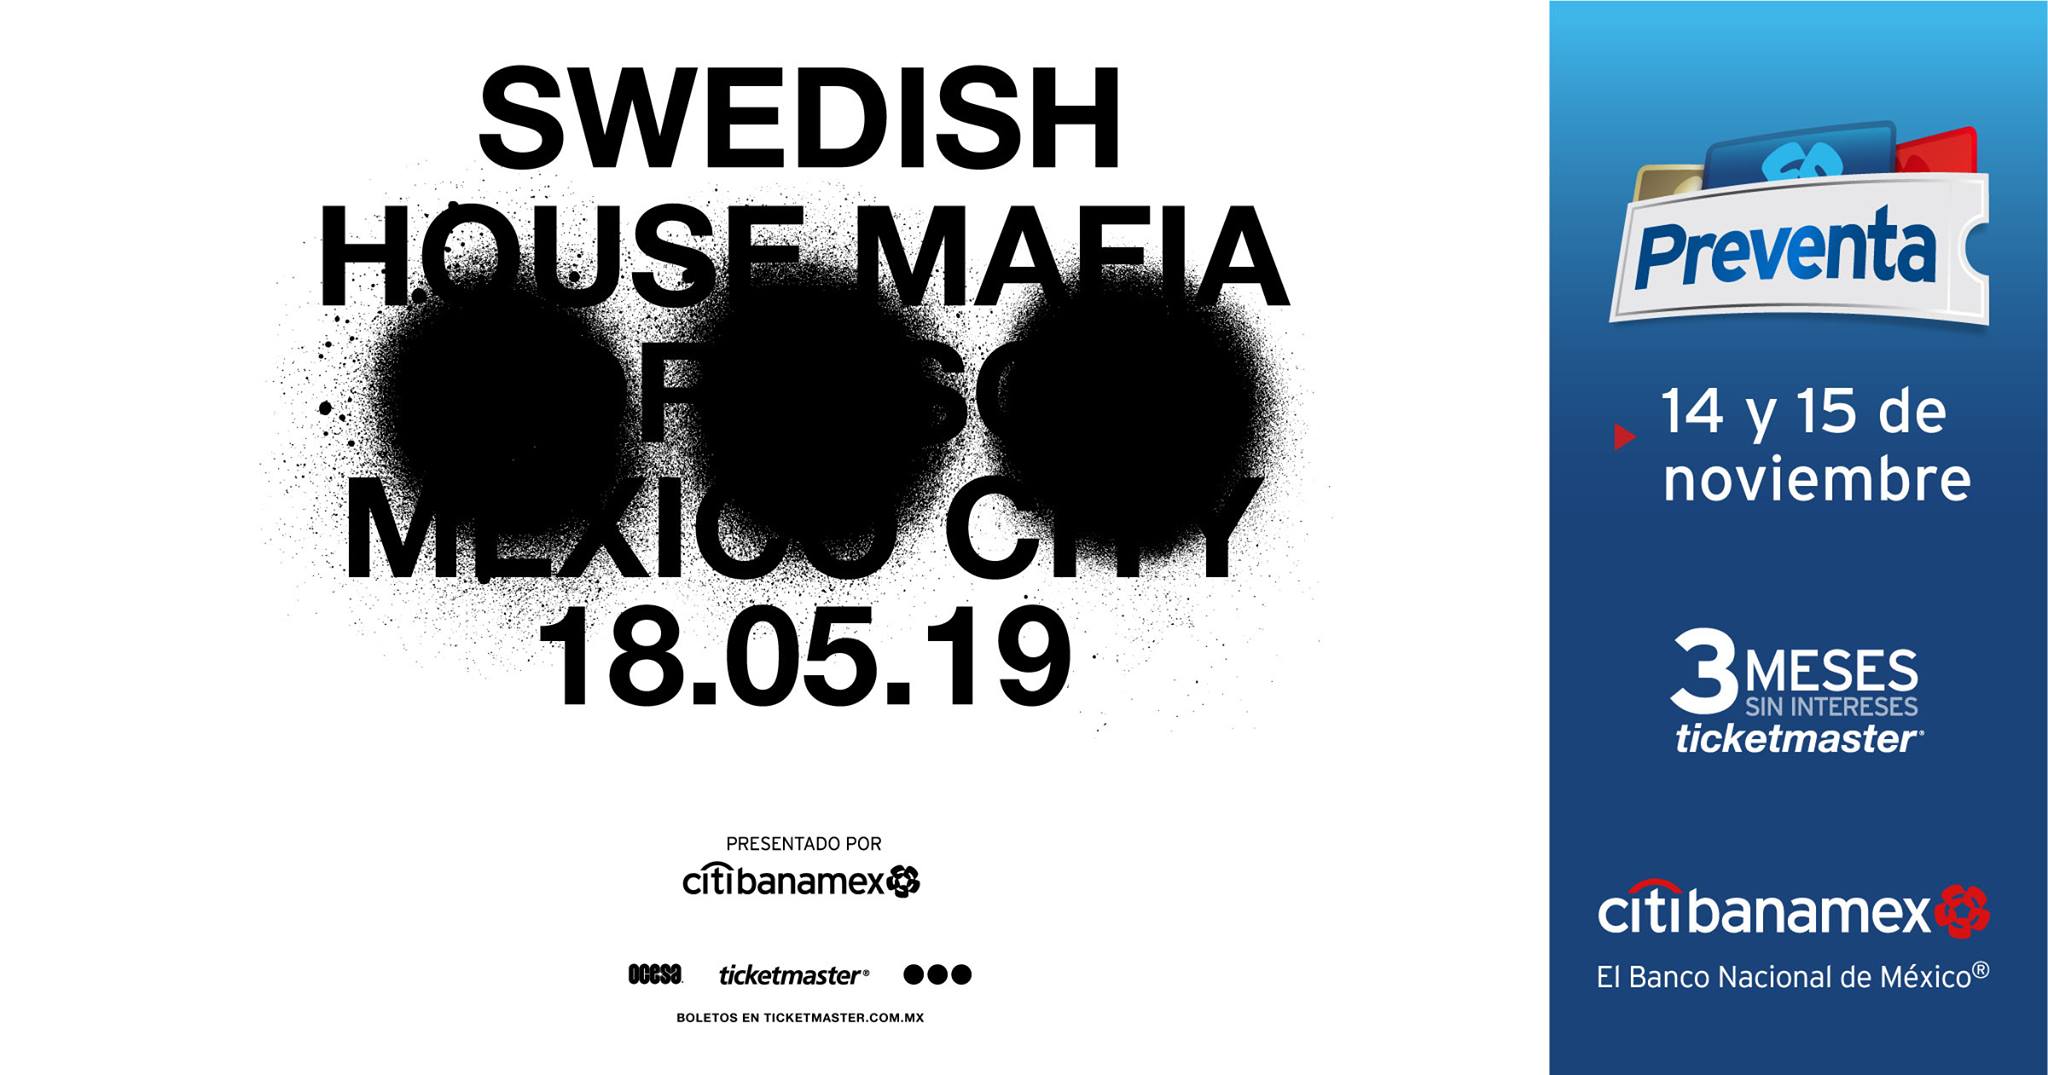 Swedish House Mafia Mexico City 2019